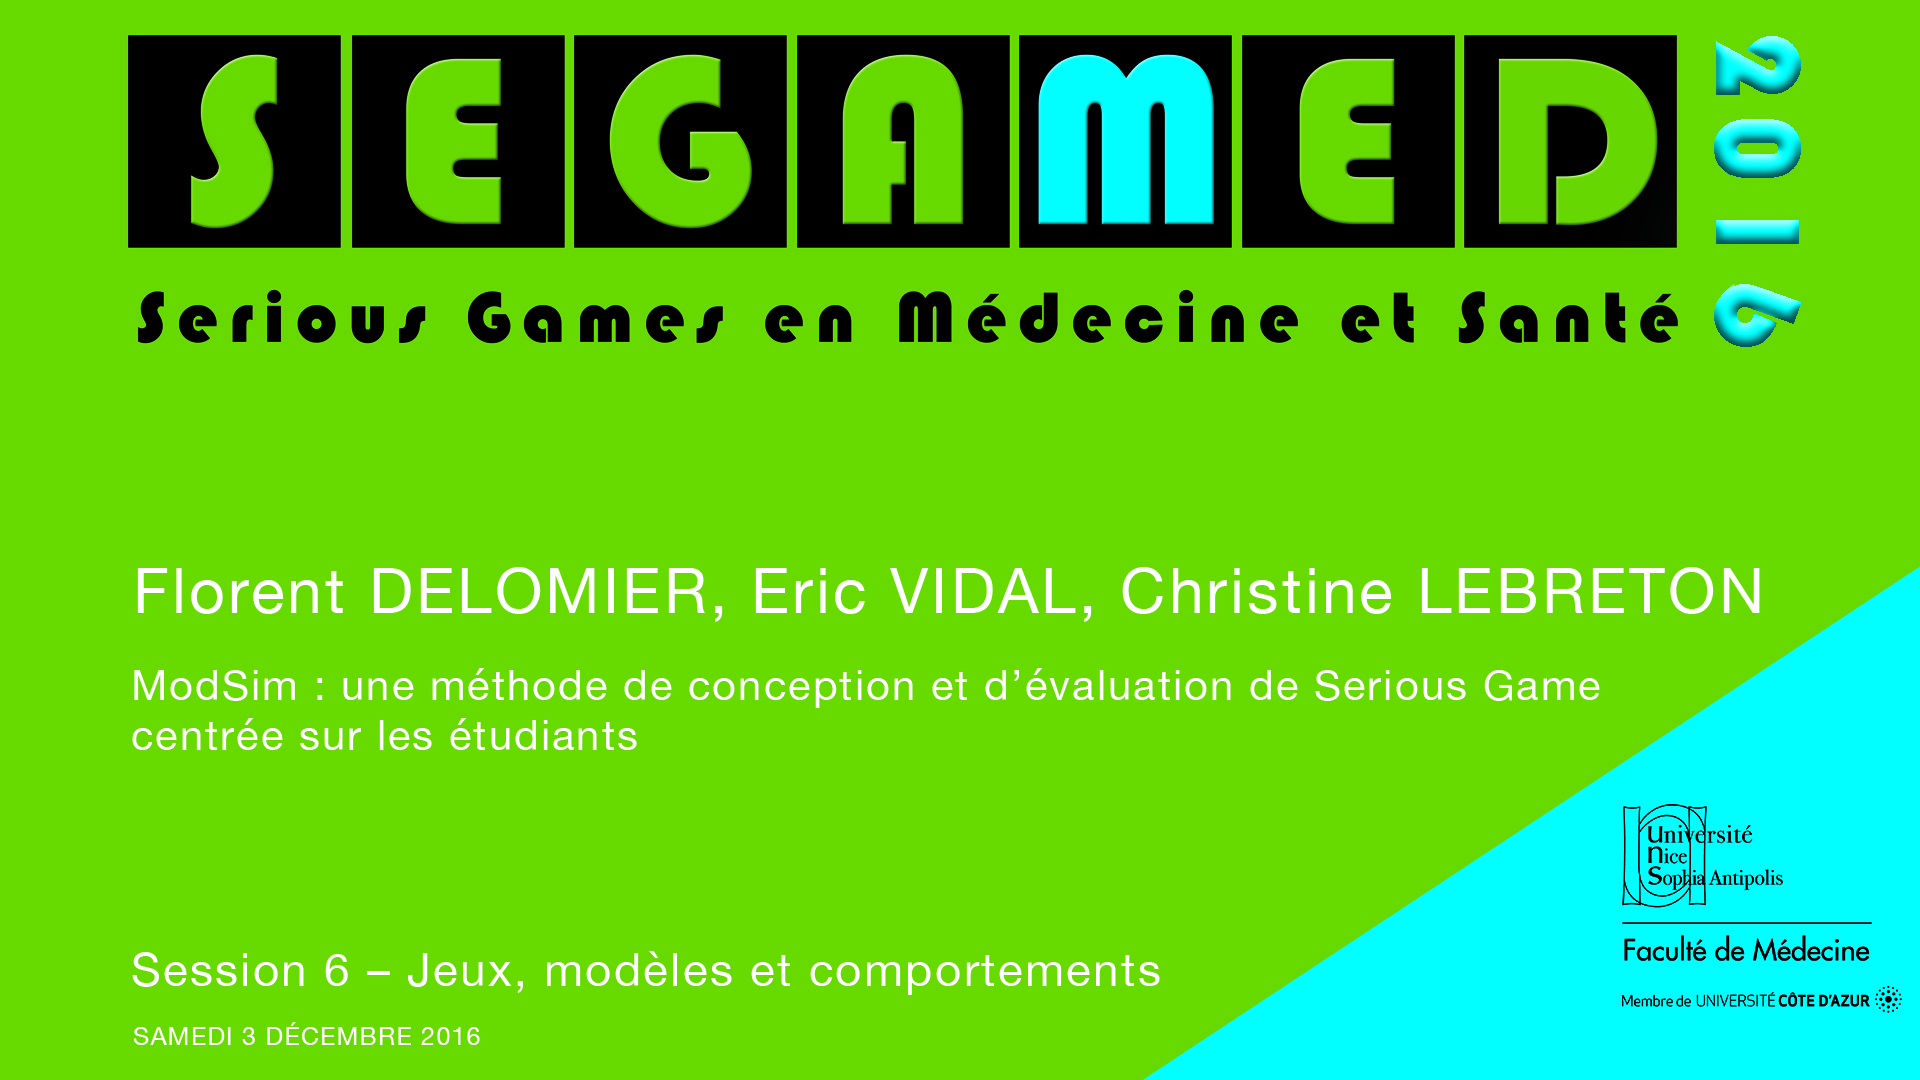 SEGAMED 2016 - ModSim : une méthode de conception et d’évaluation de Serious Game centrée sur les étudiants